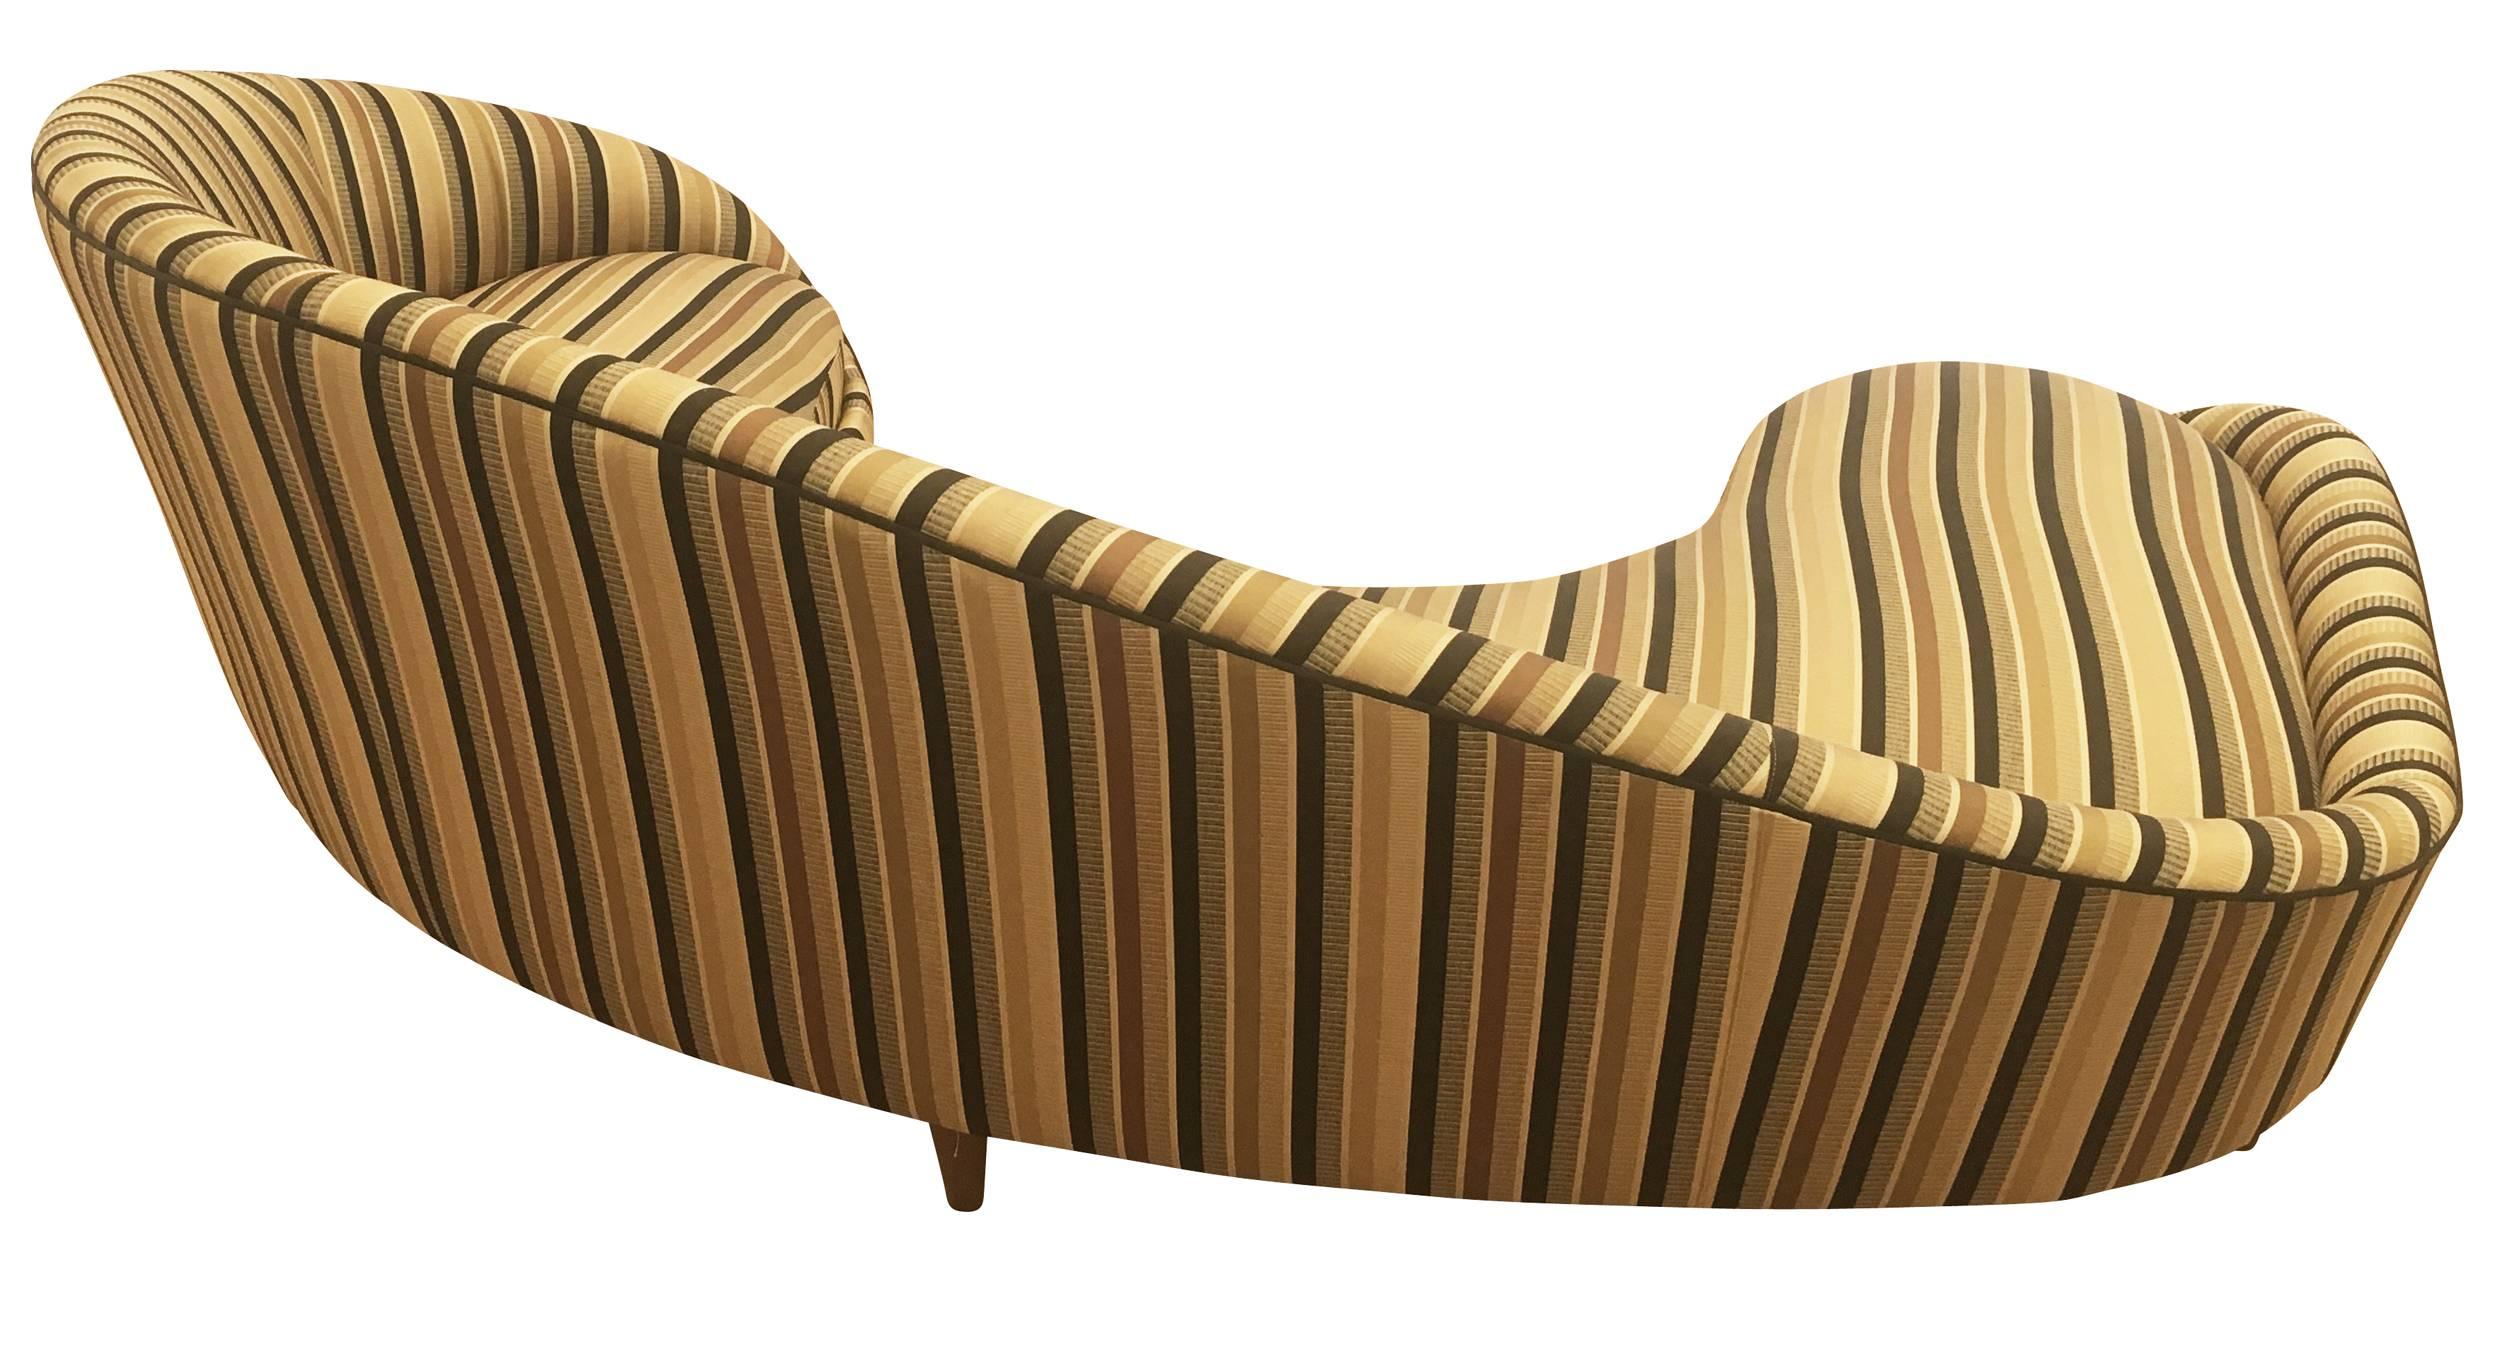 Mid-20th Century Large Curved Italian Mid-Century Sofa